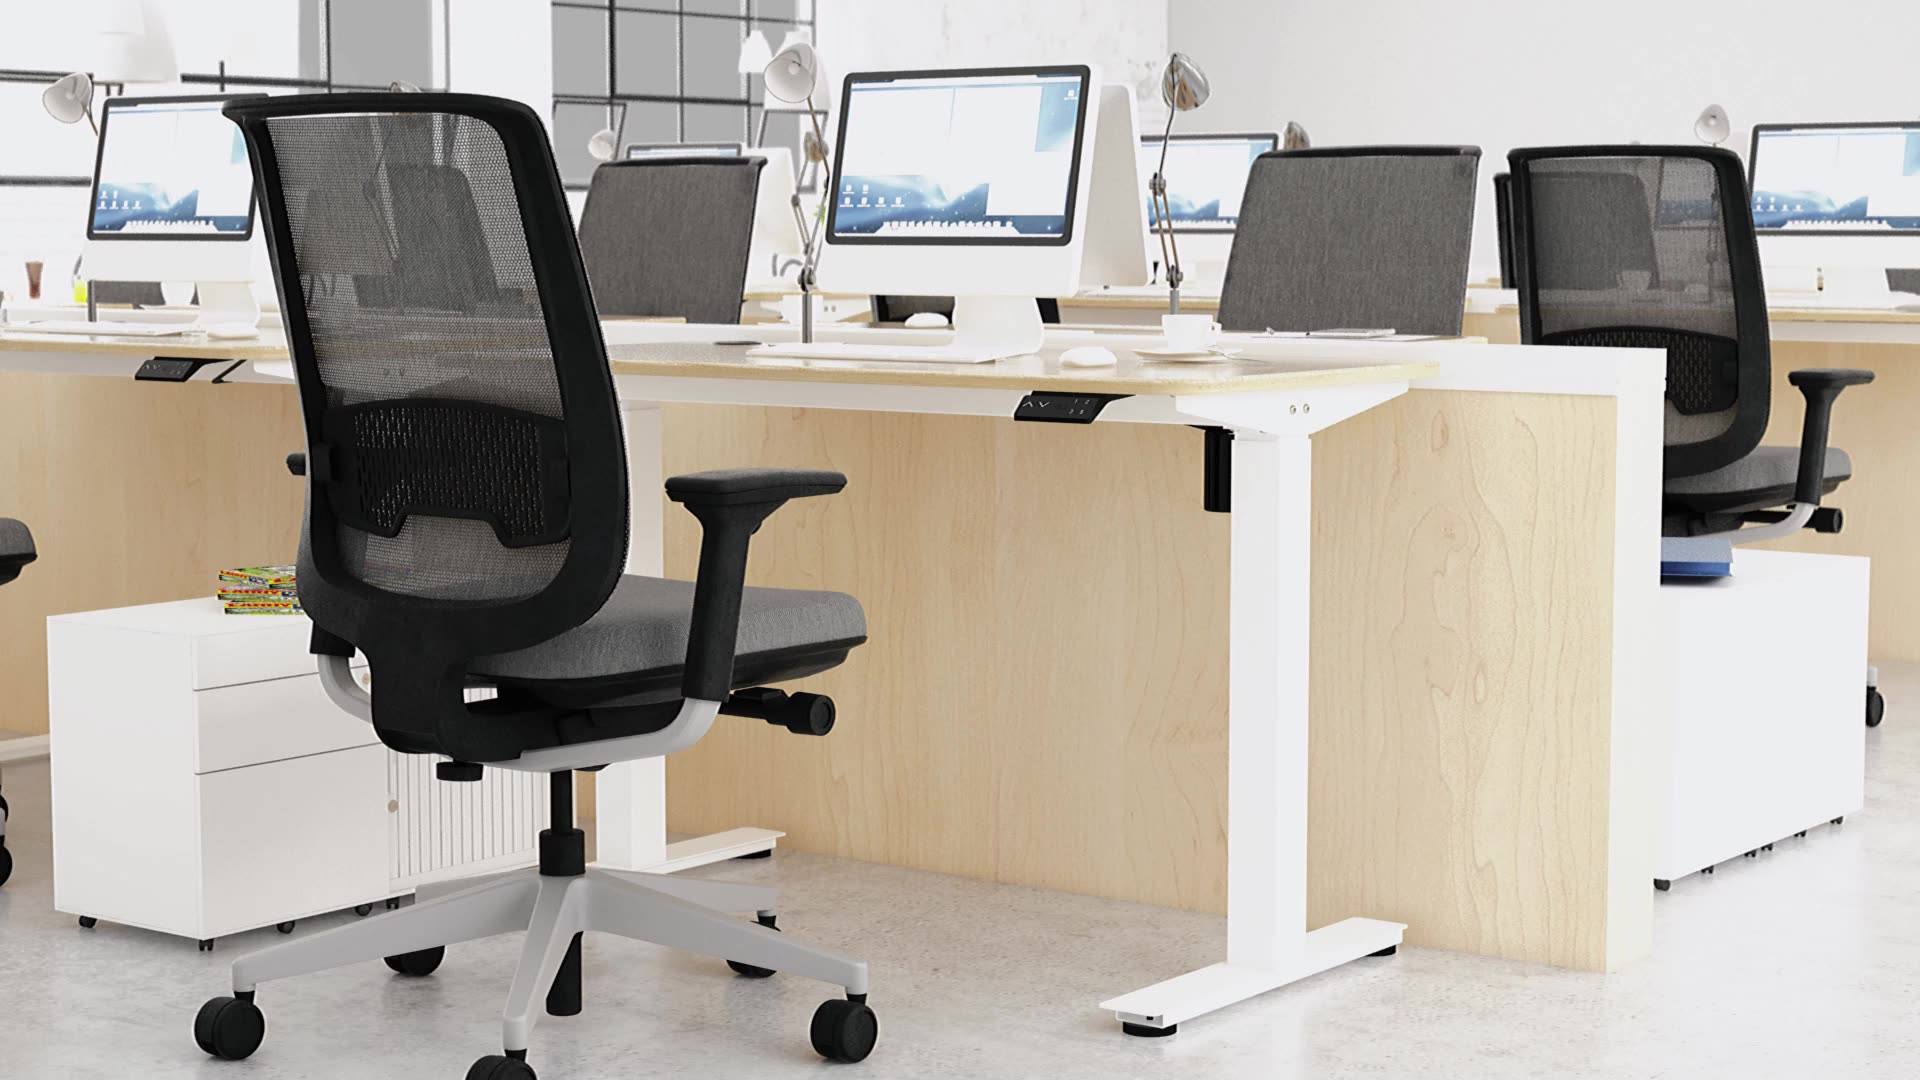 Contuo berdiri meja elektrik ergonomicoffice meja komputer boleh laras meja moden1